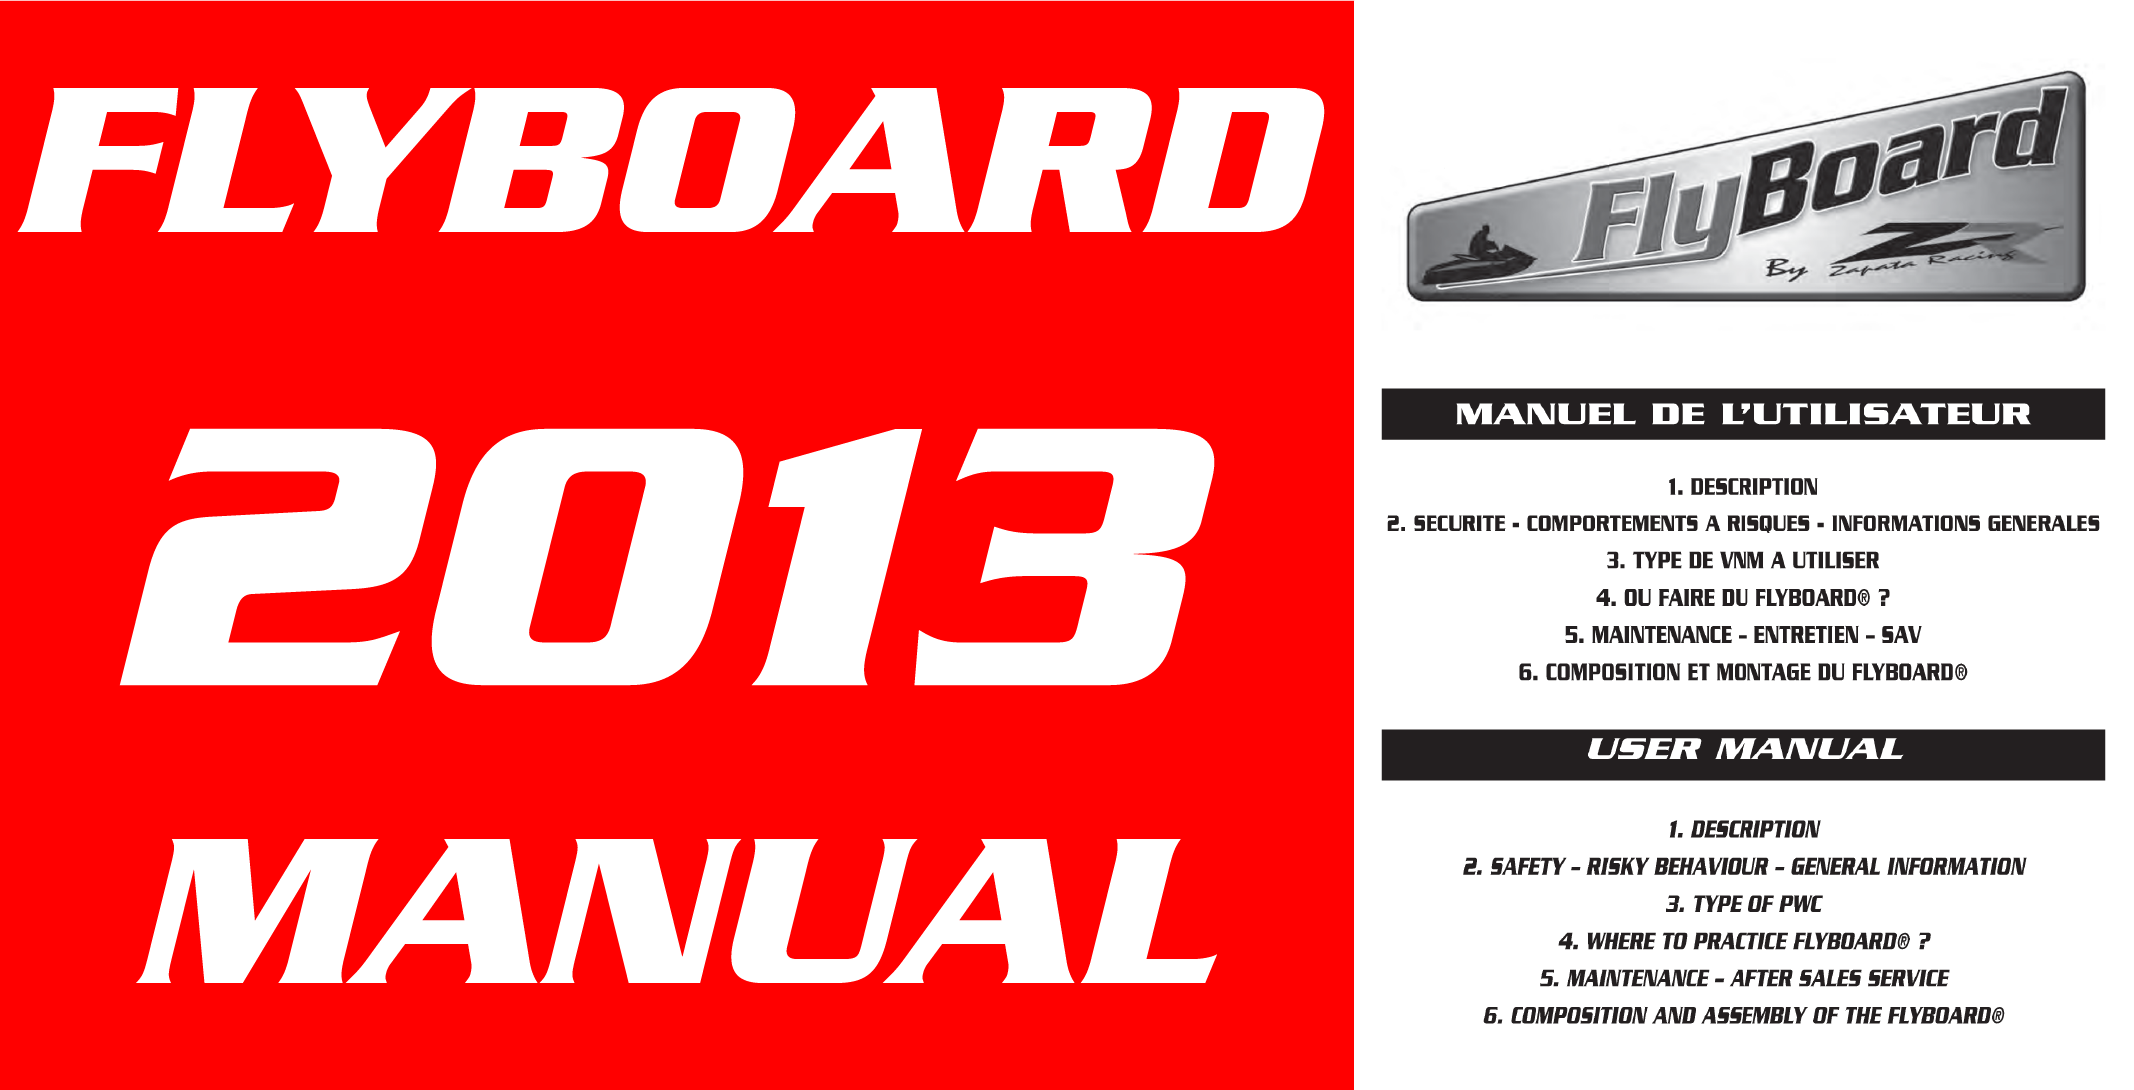 Flyboard V2 2013 Manual Download